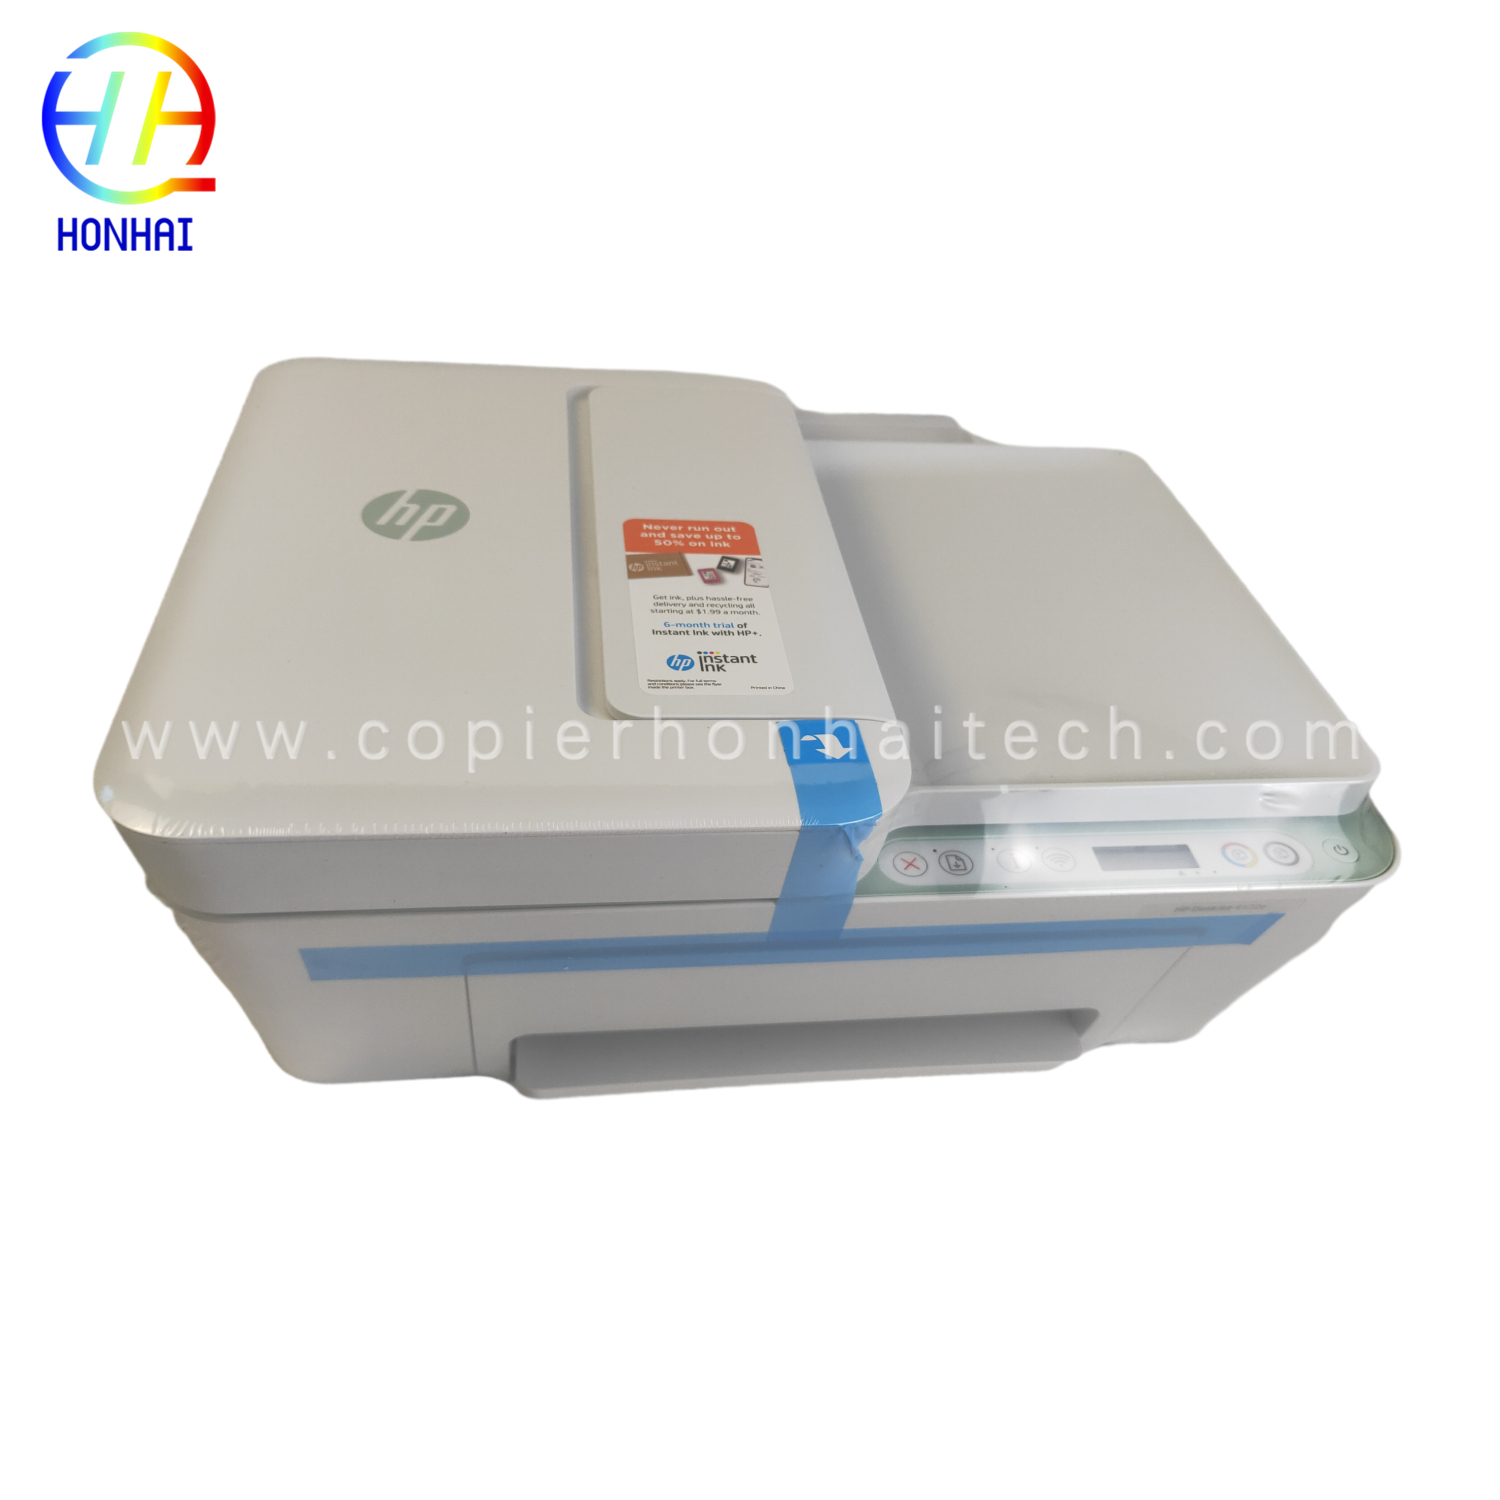 Yekutanga nyowani Wireless printer yeHP DeskJet 4122e All-in-One Printer Scan uye Copy - Hofisi Yepamba, Vadzidzi uye Imba Printer - 26Q96A